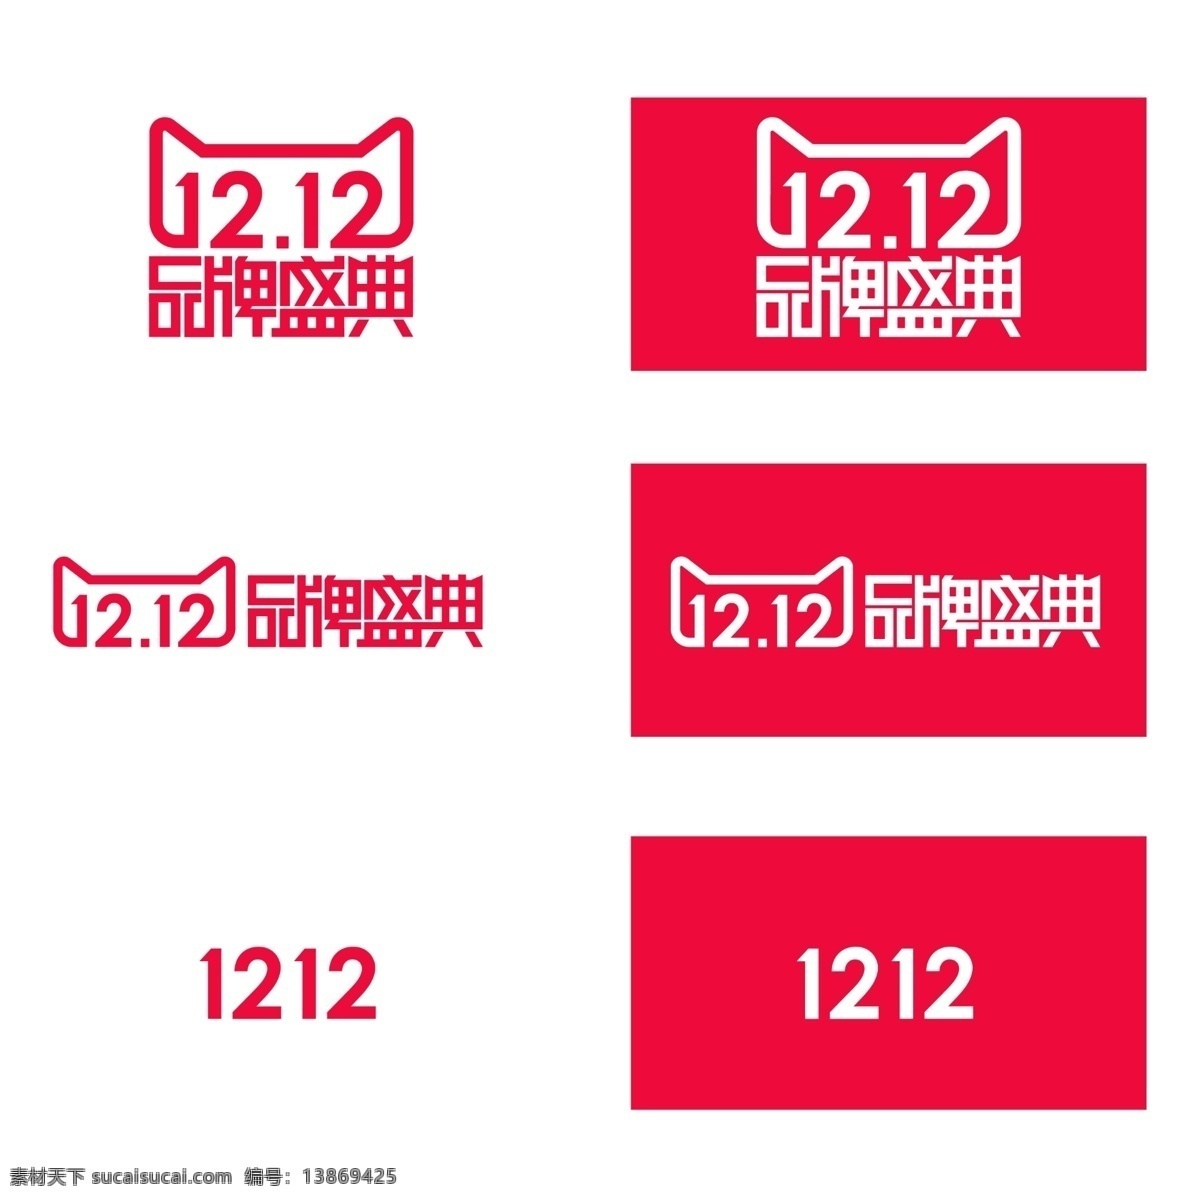 天猫 2015 双 品牌 盛典 logo 淘宝素材 淘宝设计 淘宝模板下载